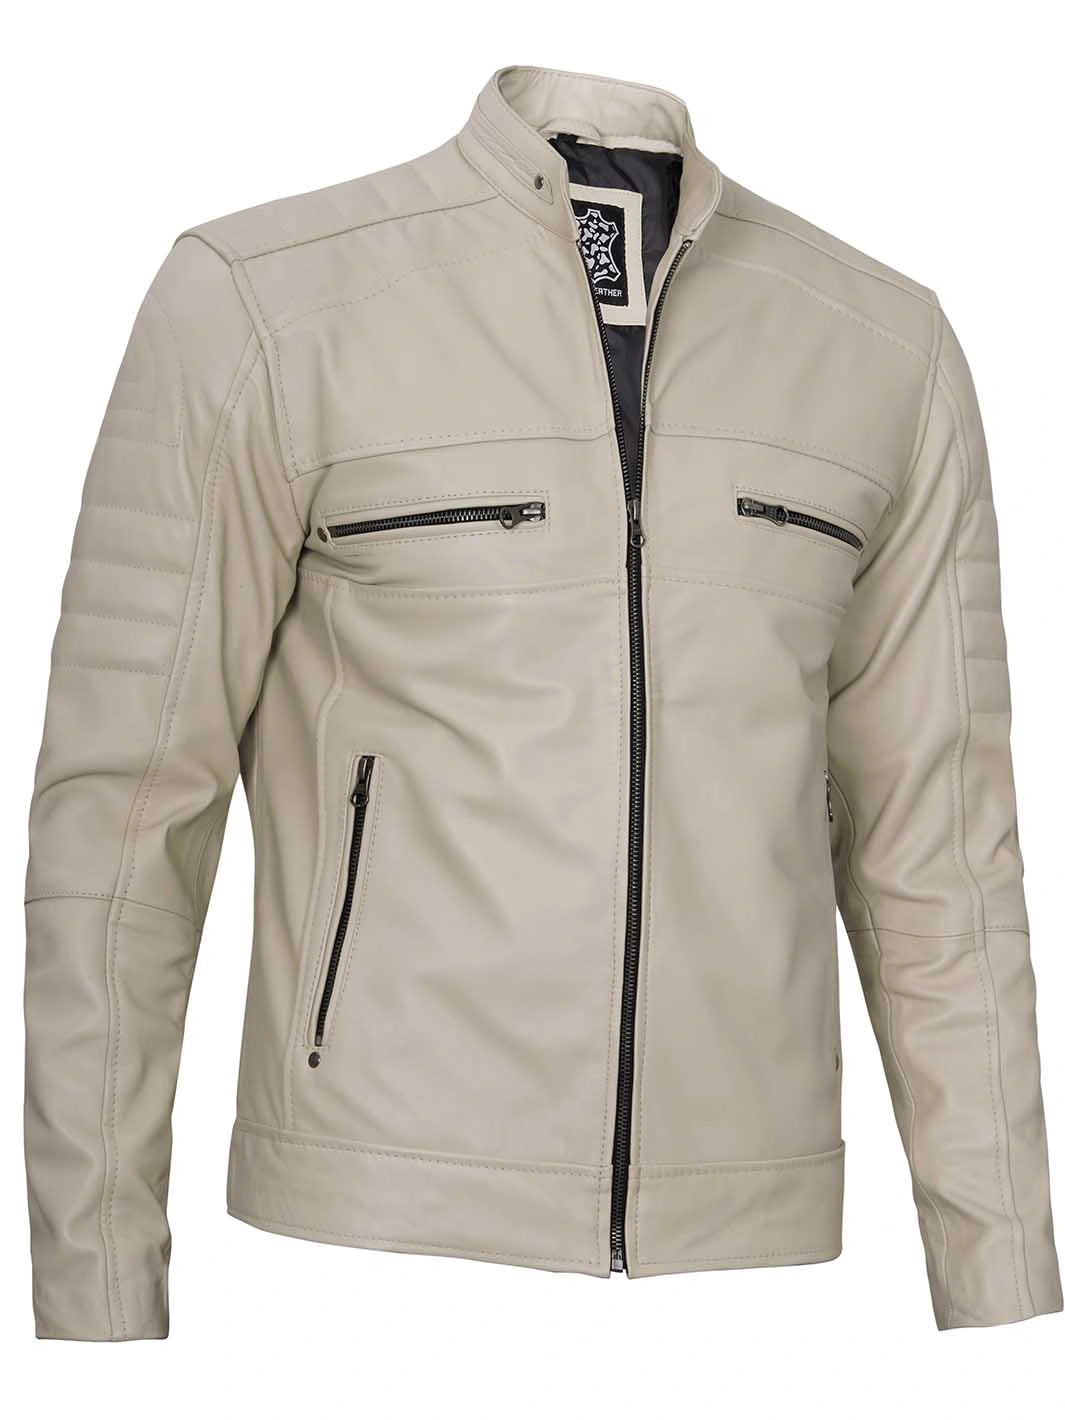 Cafe racer beige leather jacket